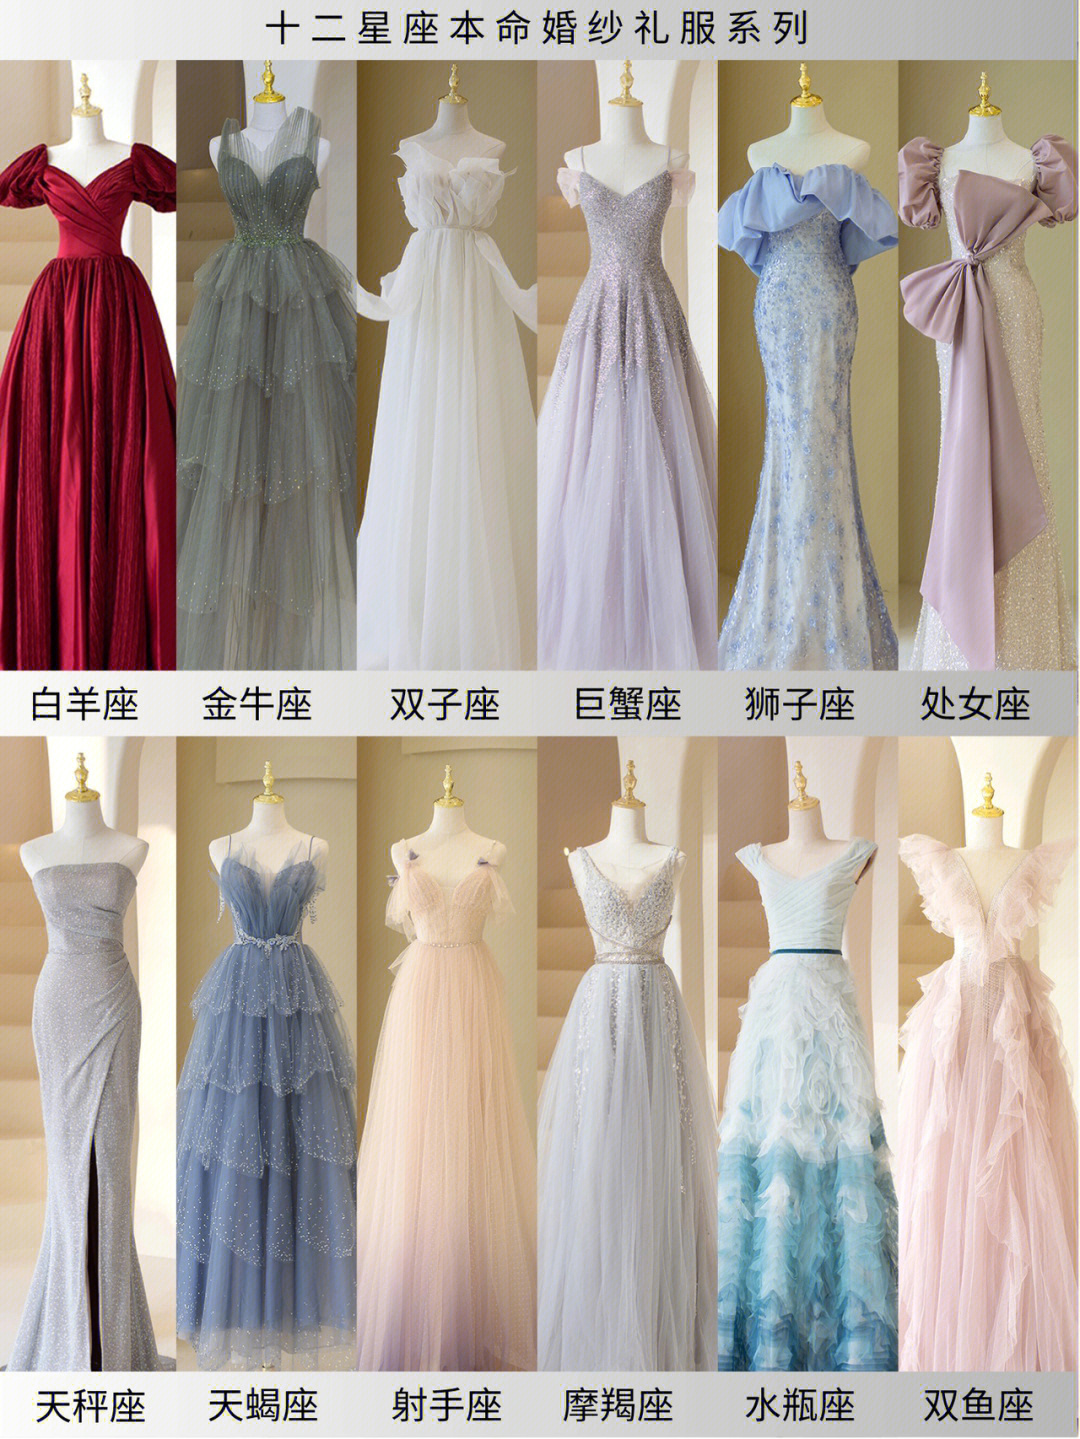 12星座婚纱礼服图片